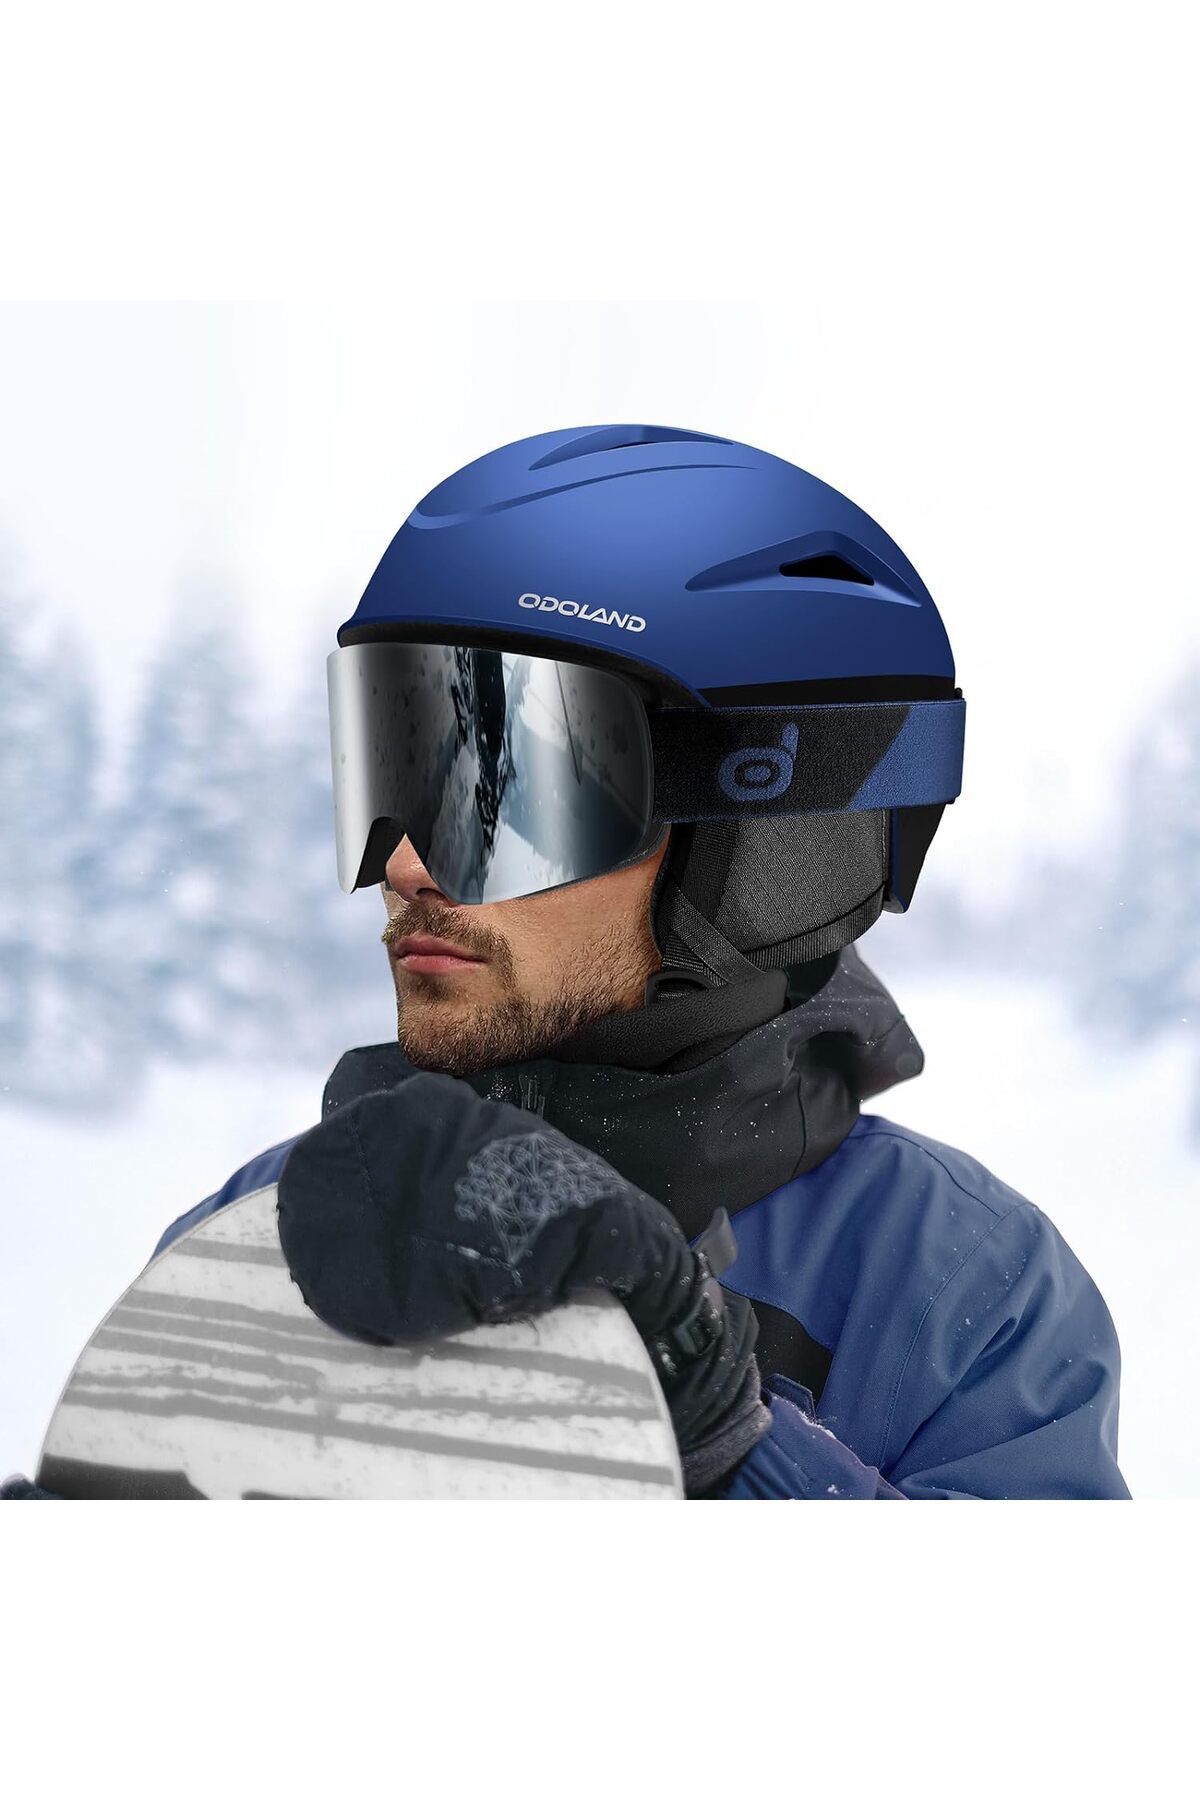 Odoland Kayak Kaskı Gözlük Seti - Ayarlanabilir, Koruyucu ve Rüzgar Geçirmez Spor Kaskı